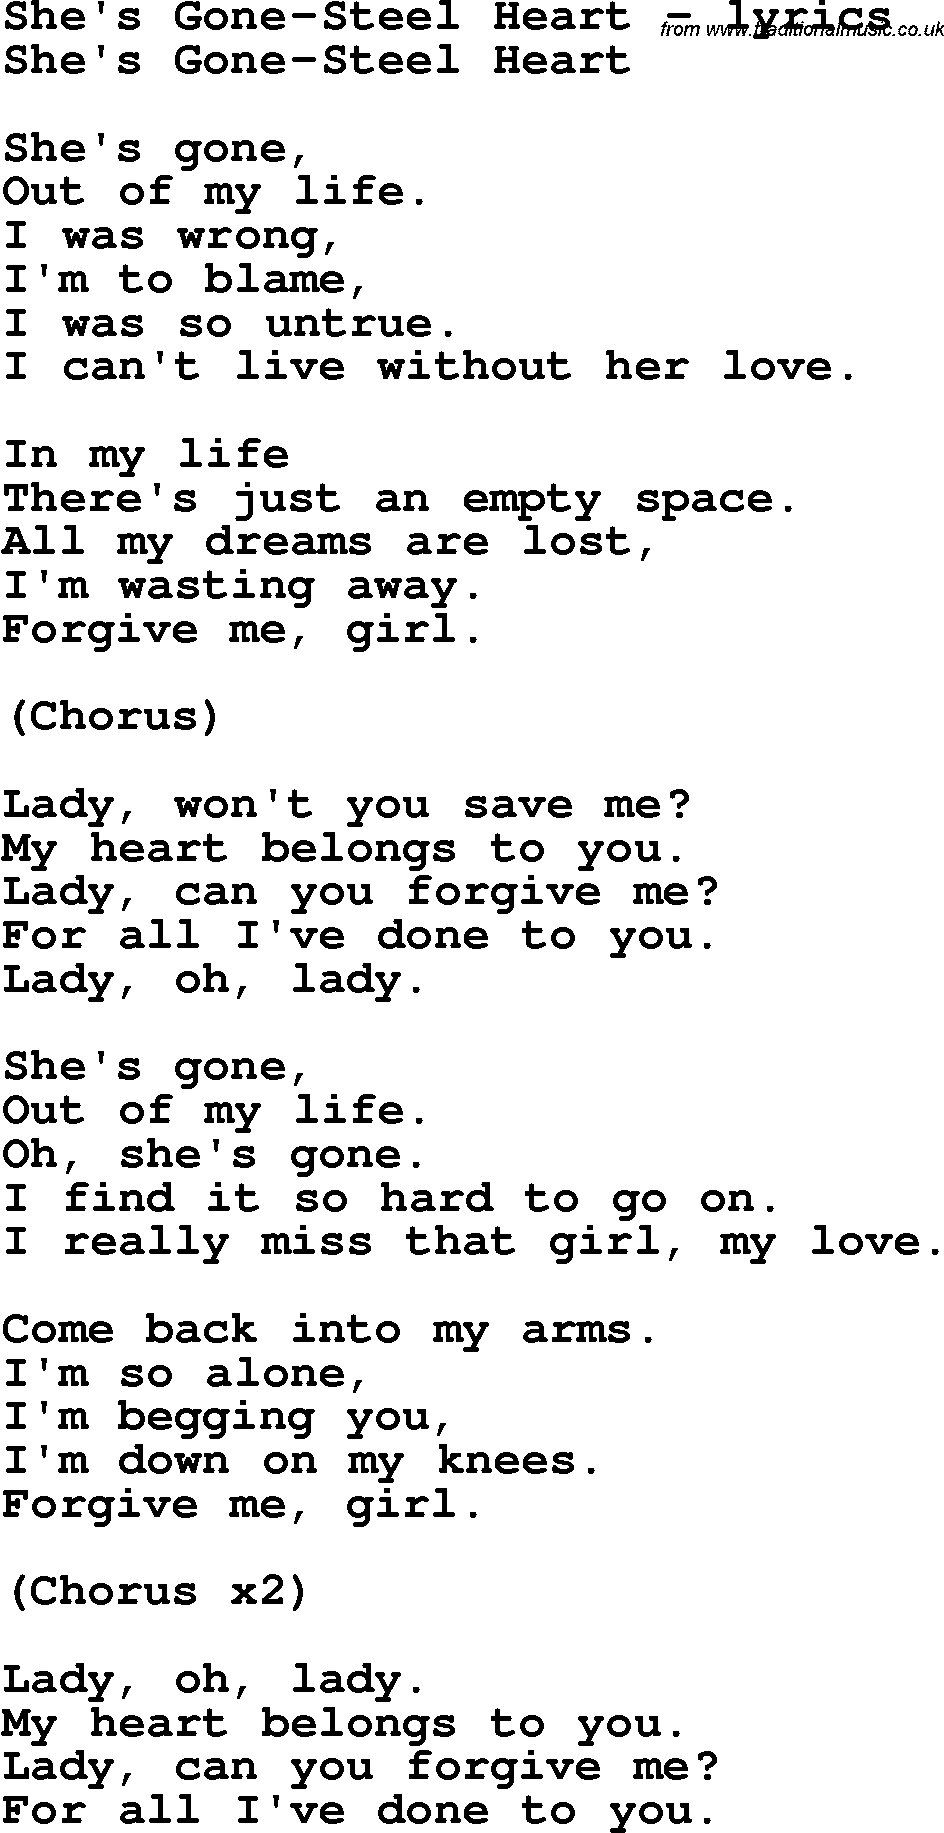 Love Song Lyrics for: She's Gone-Steel Heart